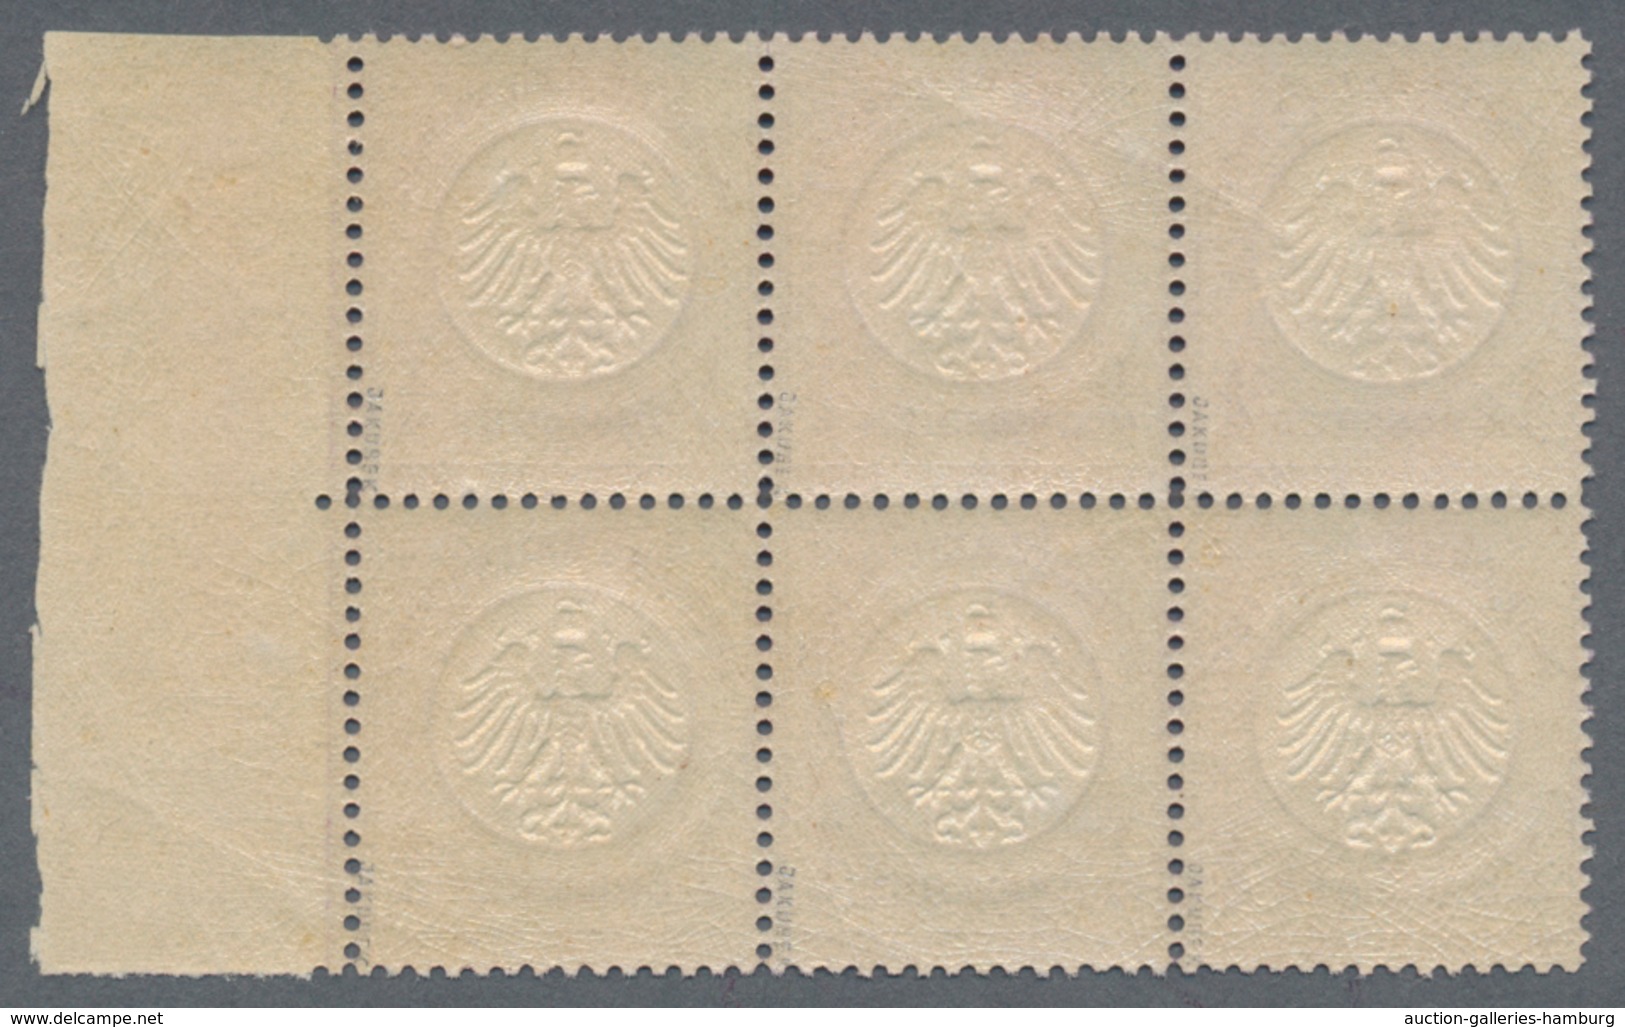 Deutsches Reich - Brustschild: 1872, 1/4 Gr. Grauviolett, Kleiner Schild Im Waagerechten 6er-Block M - Ongebruikt